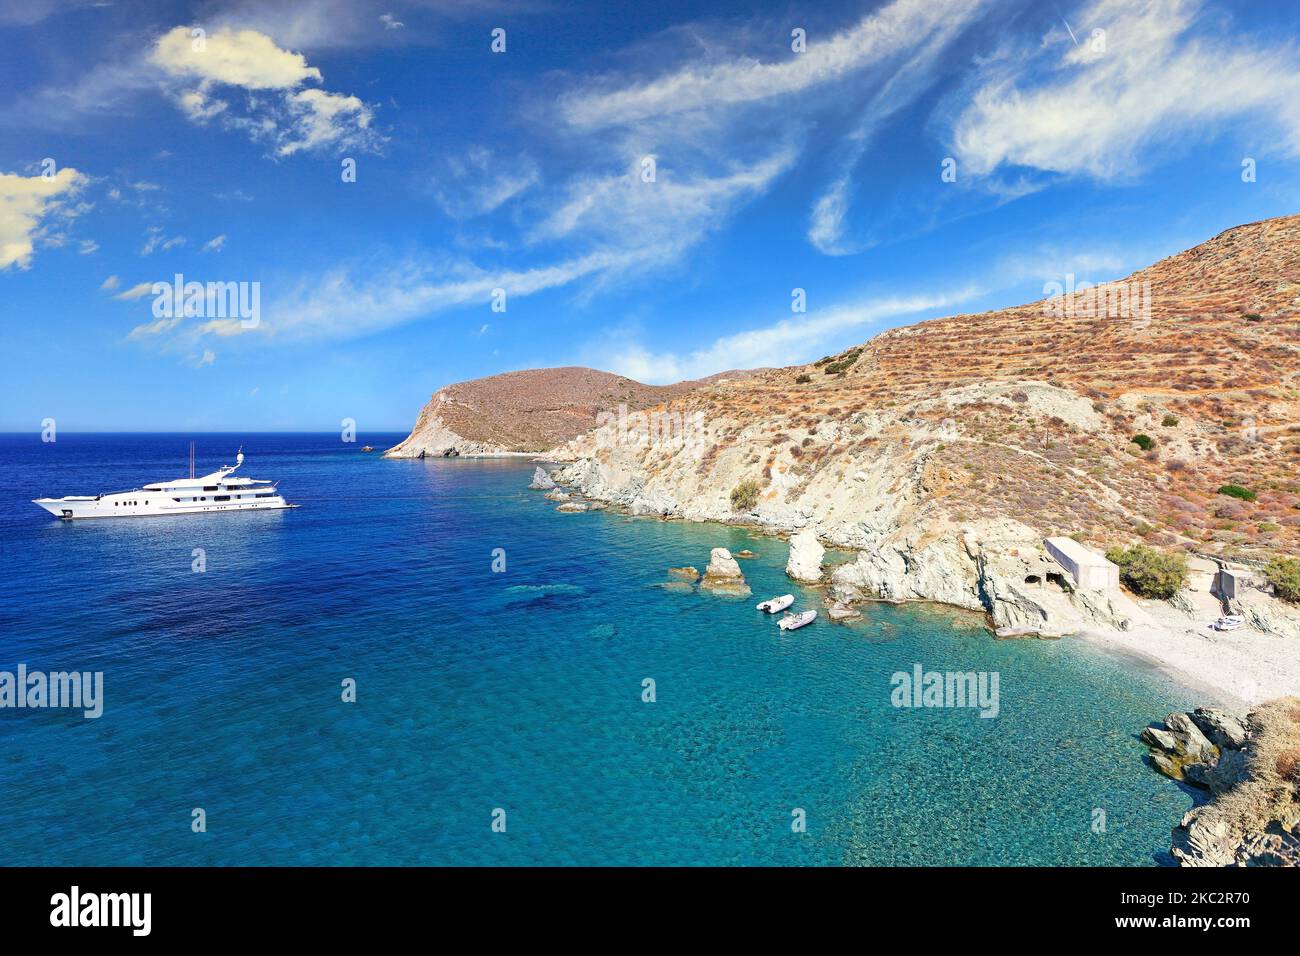 La plage de galets de Galyfos dans l'île de Folegandros, Grèce Banque D'Images